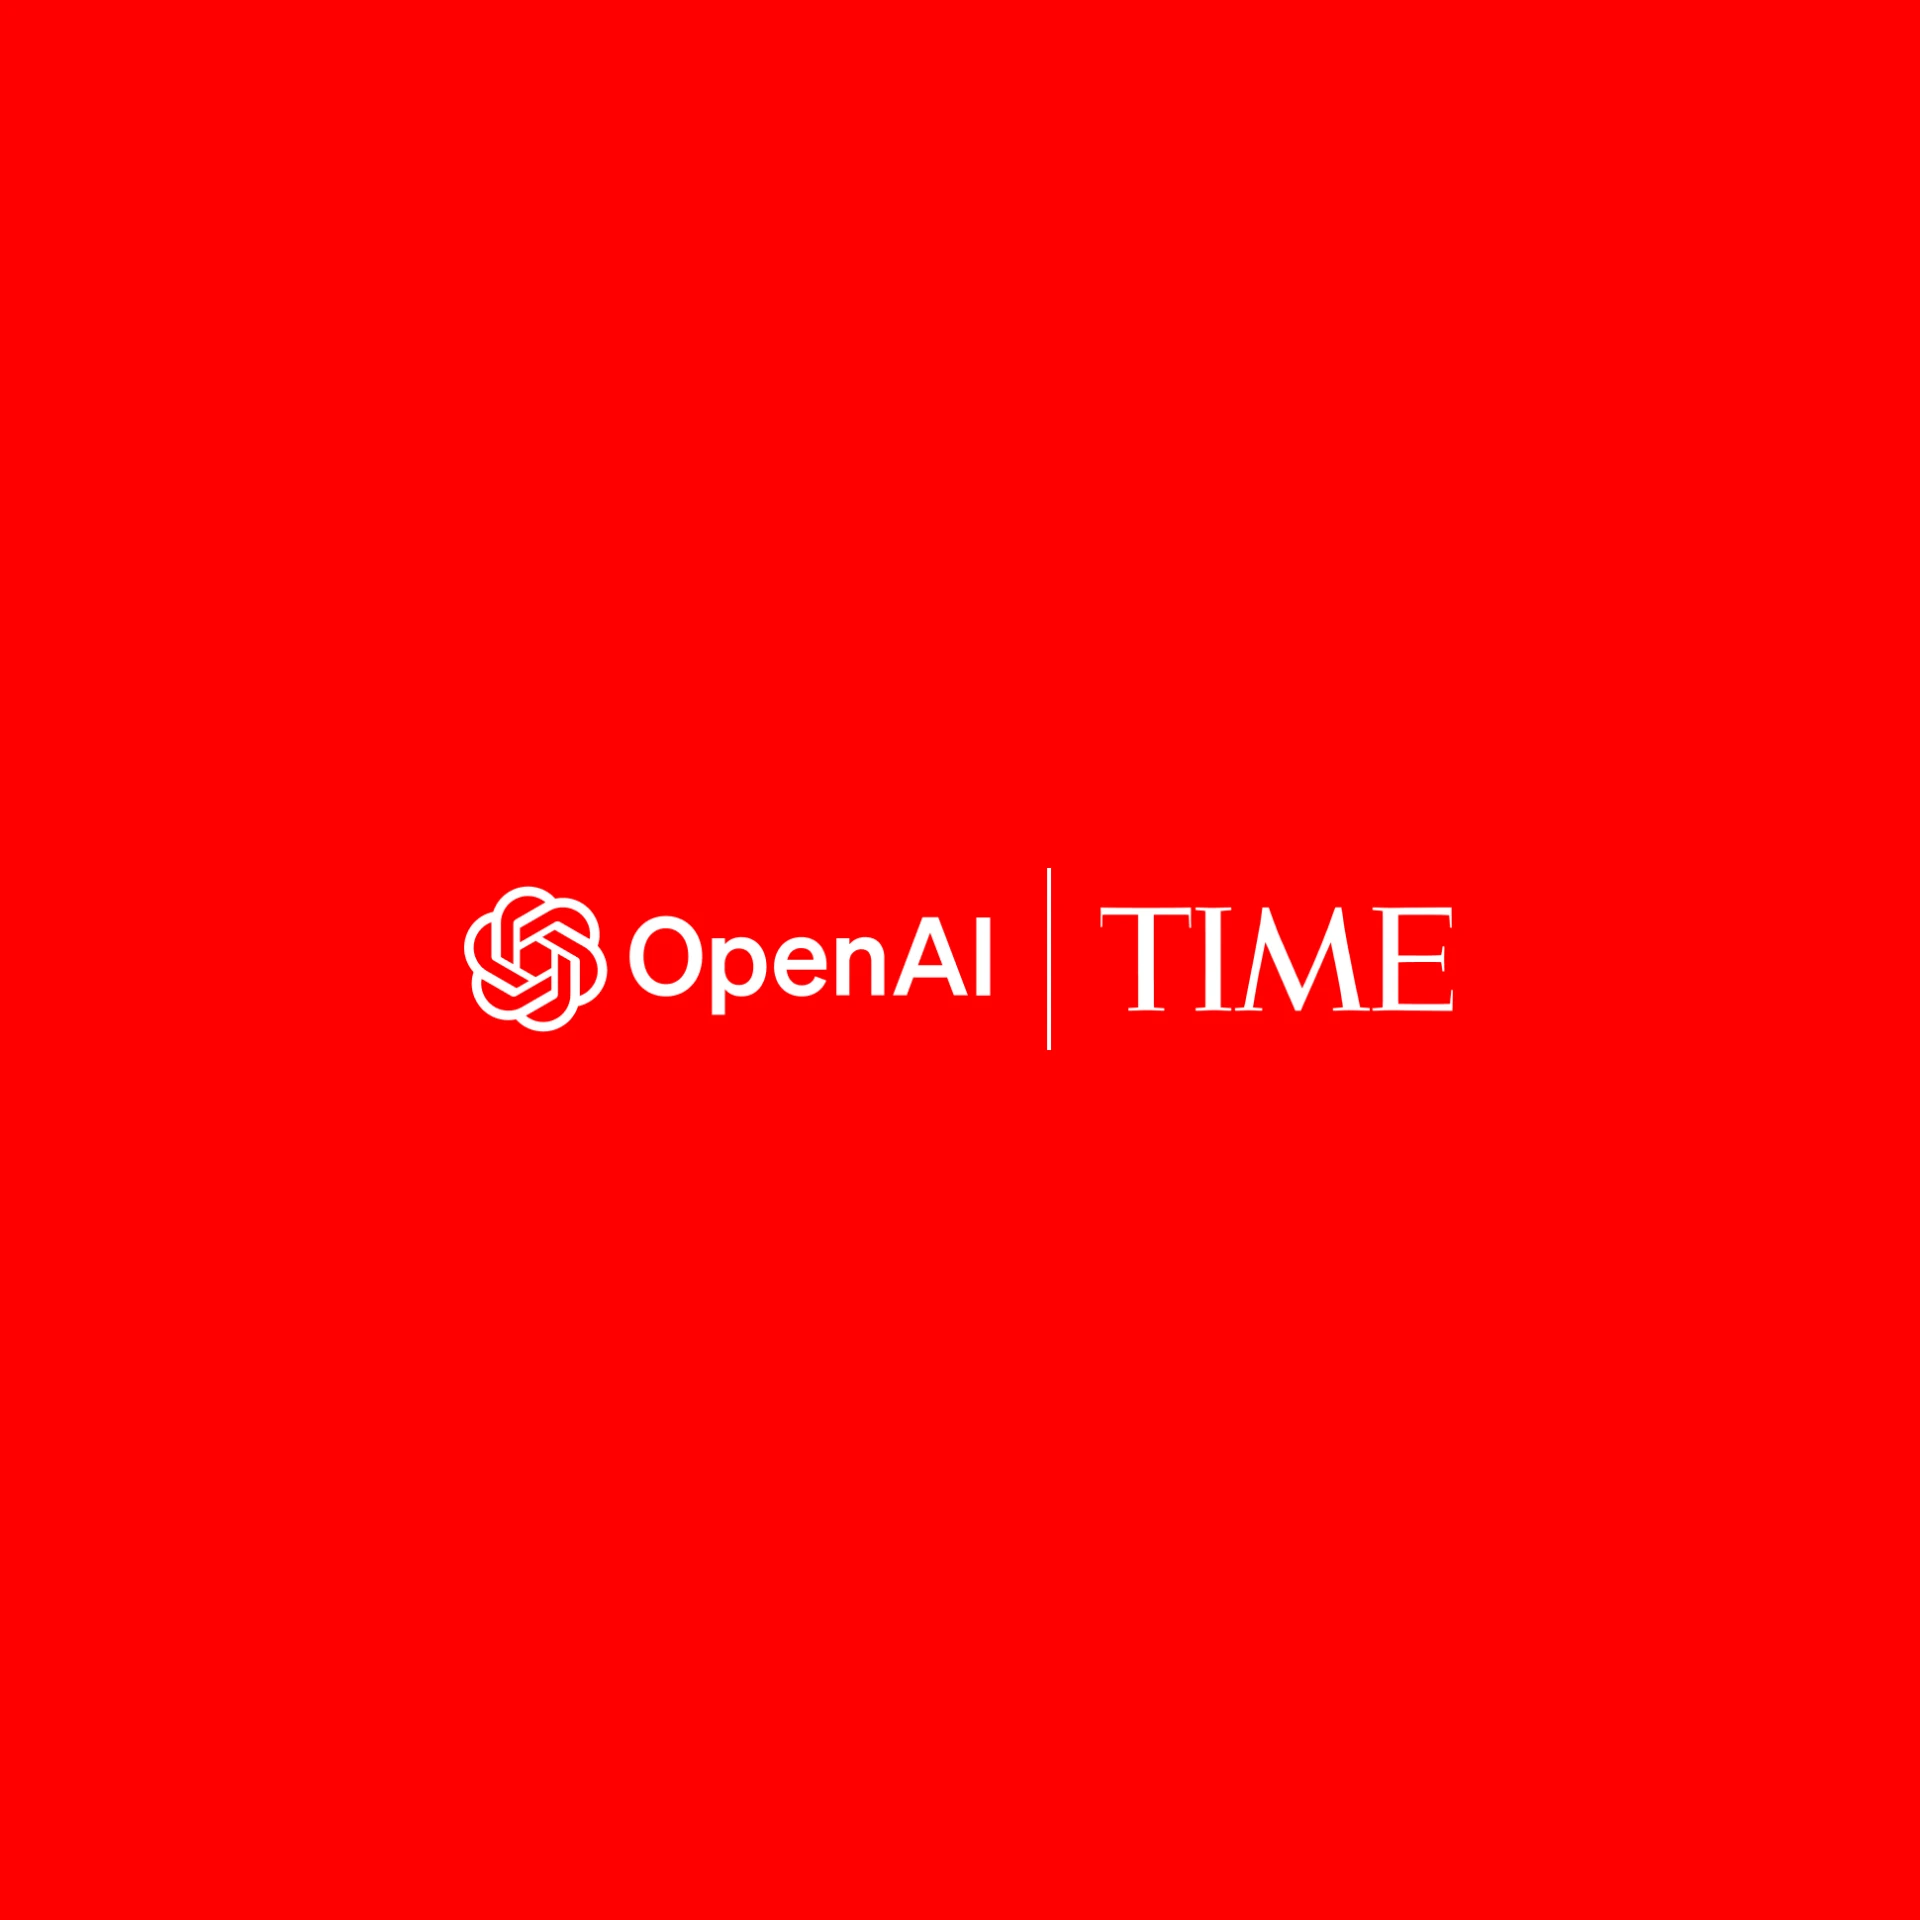 OpenAI y TIME se asocian para expandir el acceso a información fiable